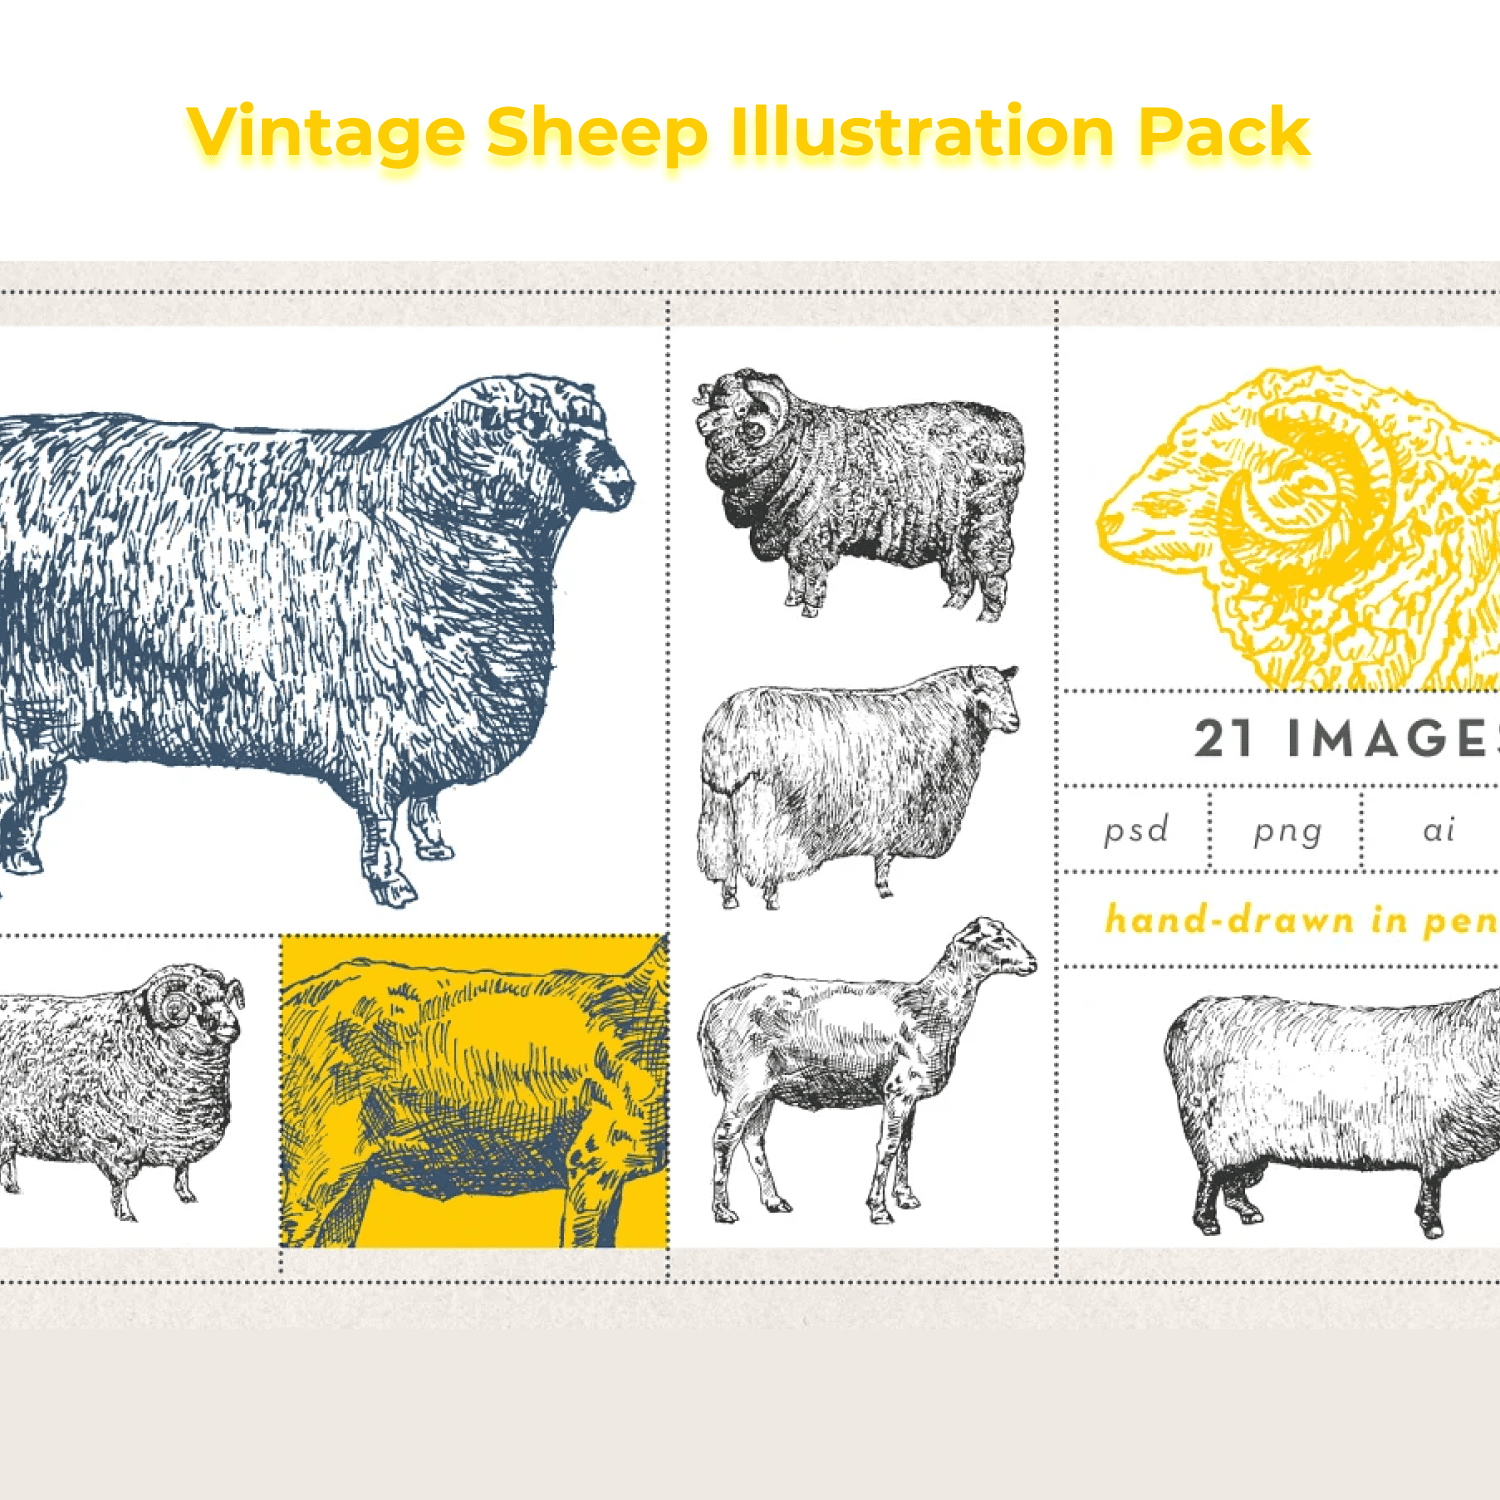 Save Vintage Sheep Illustration Pack cover.